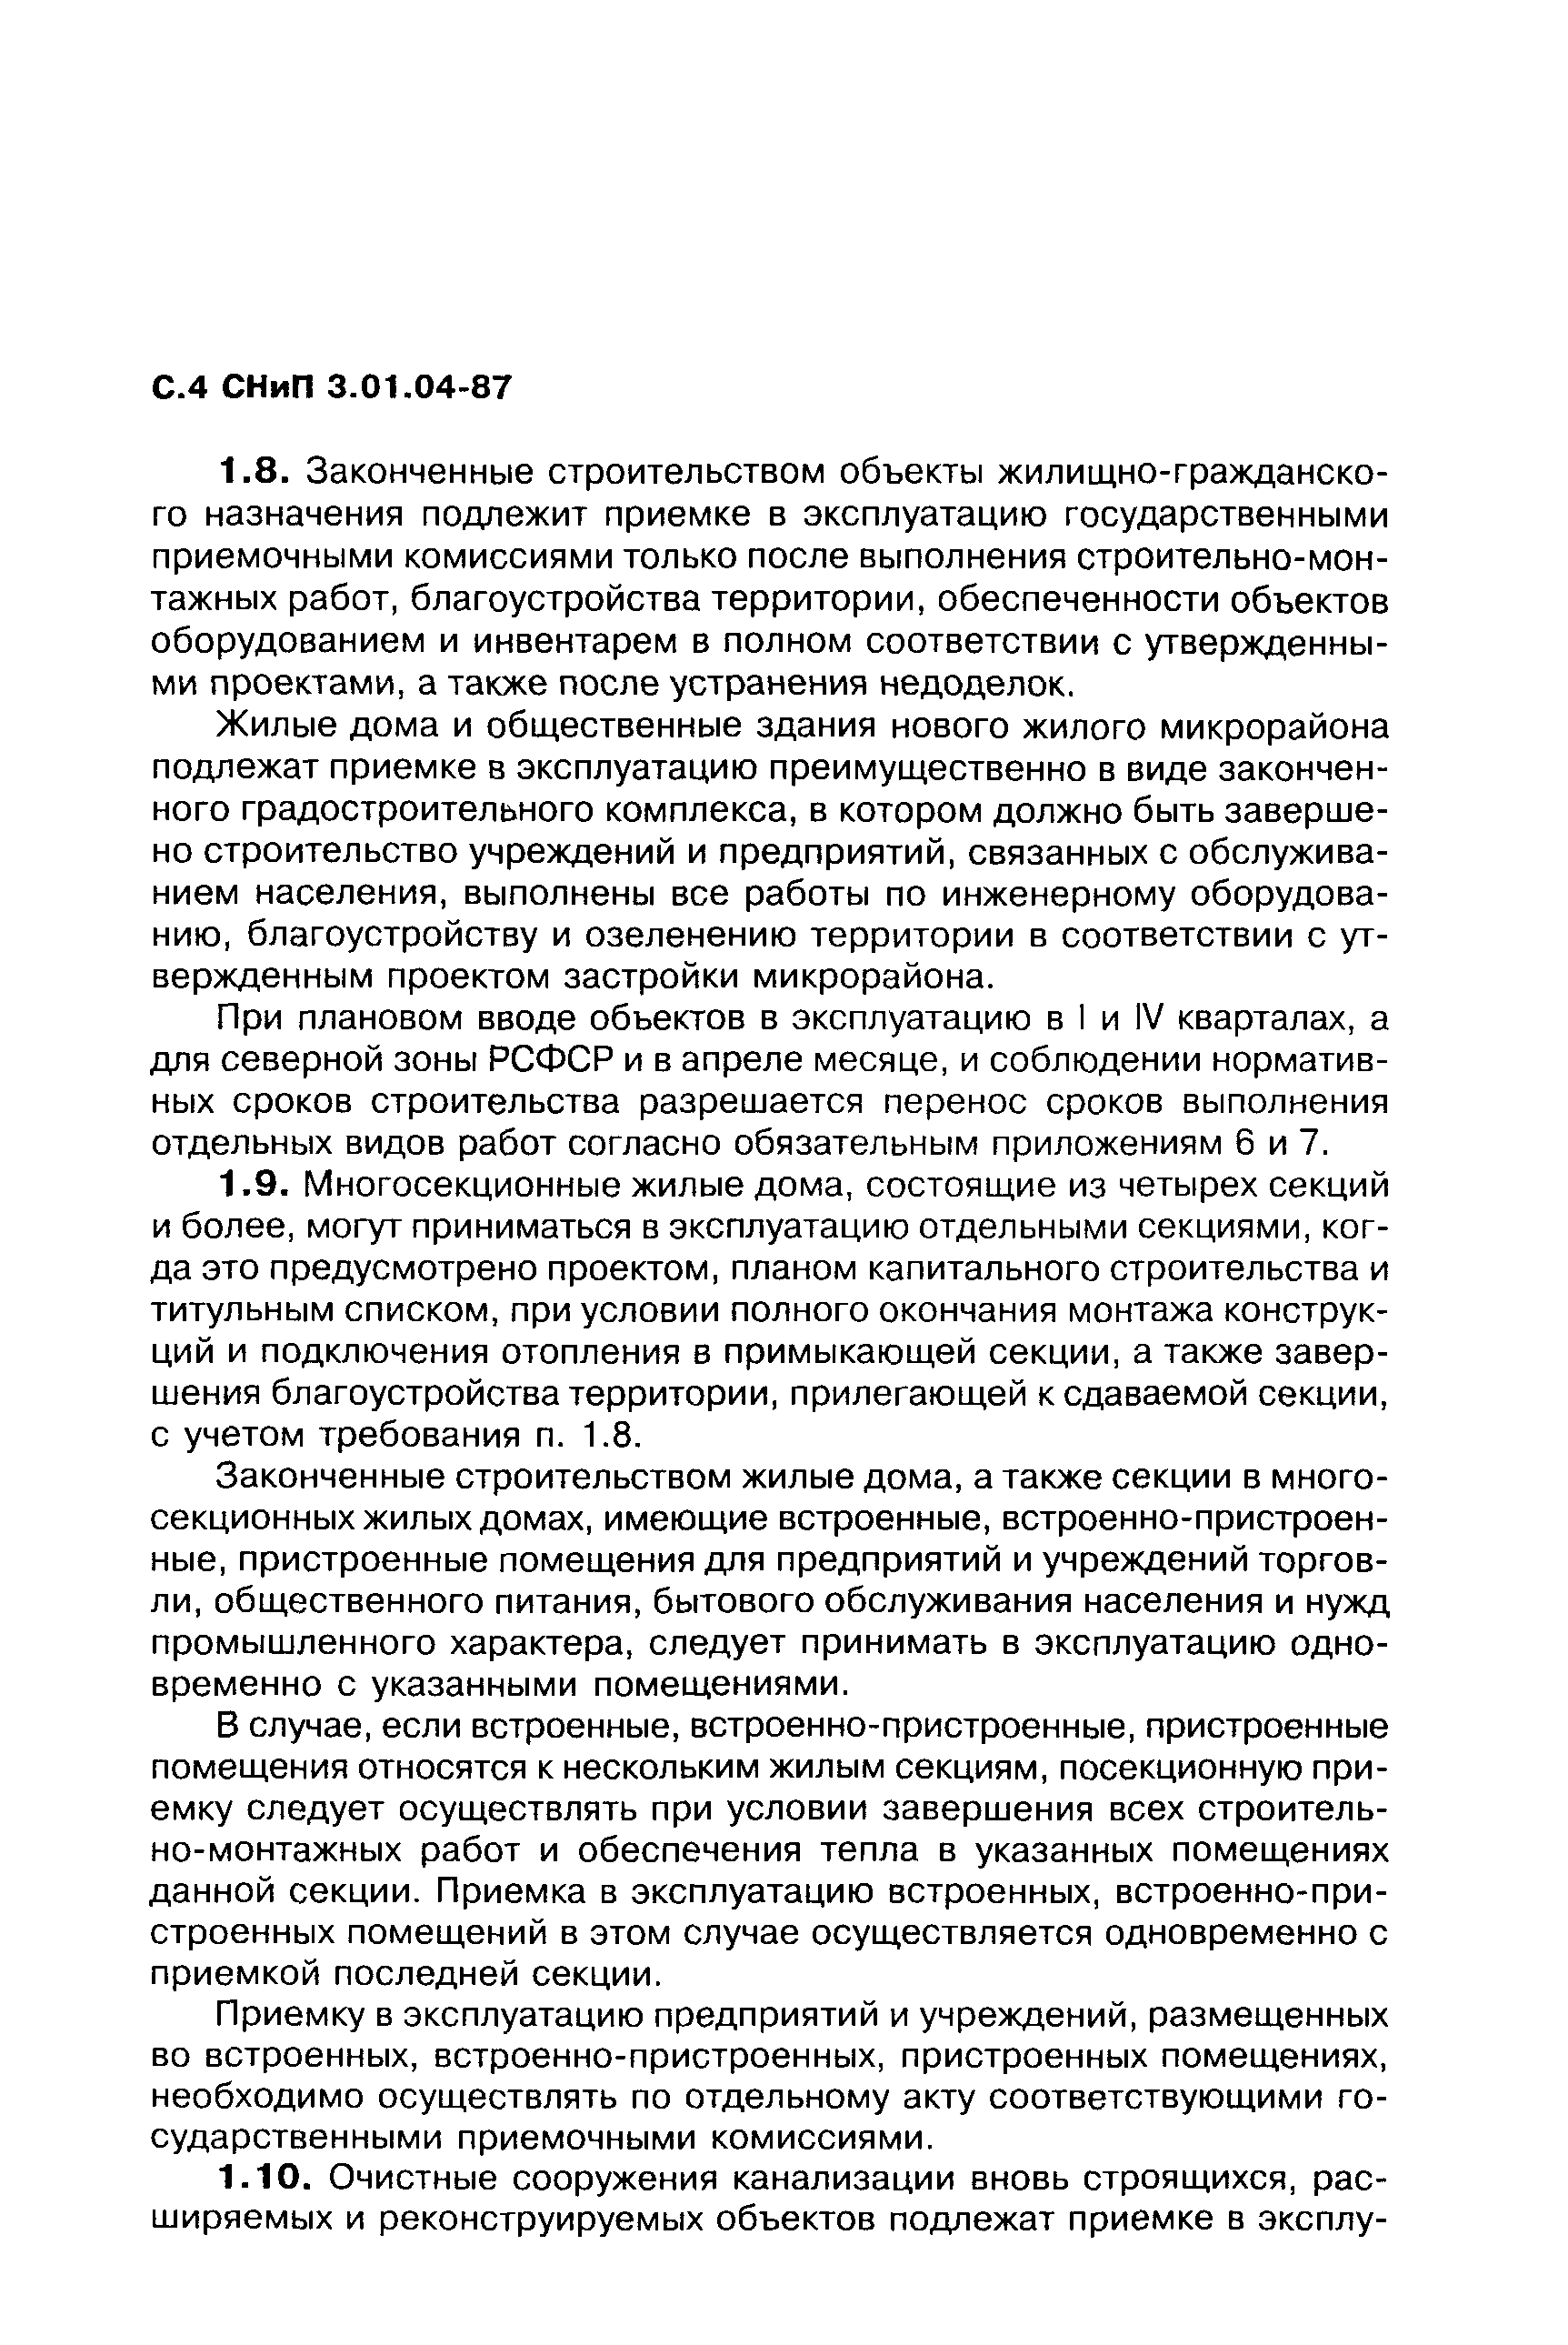 СНиП 3.01.04-87